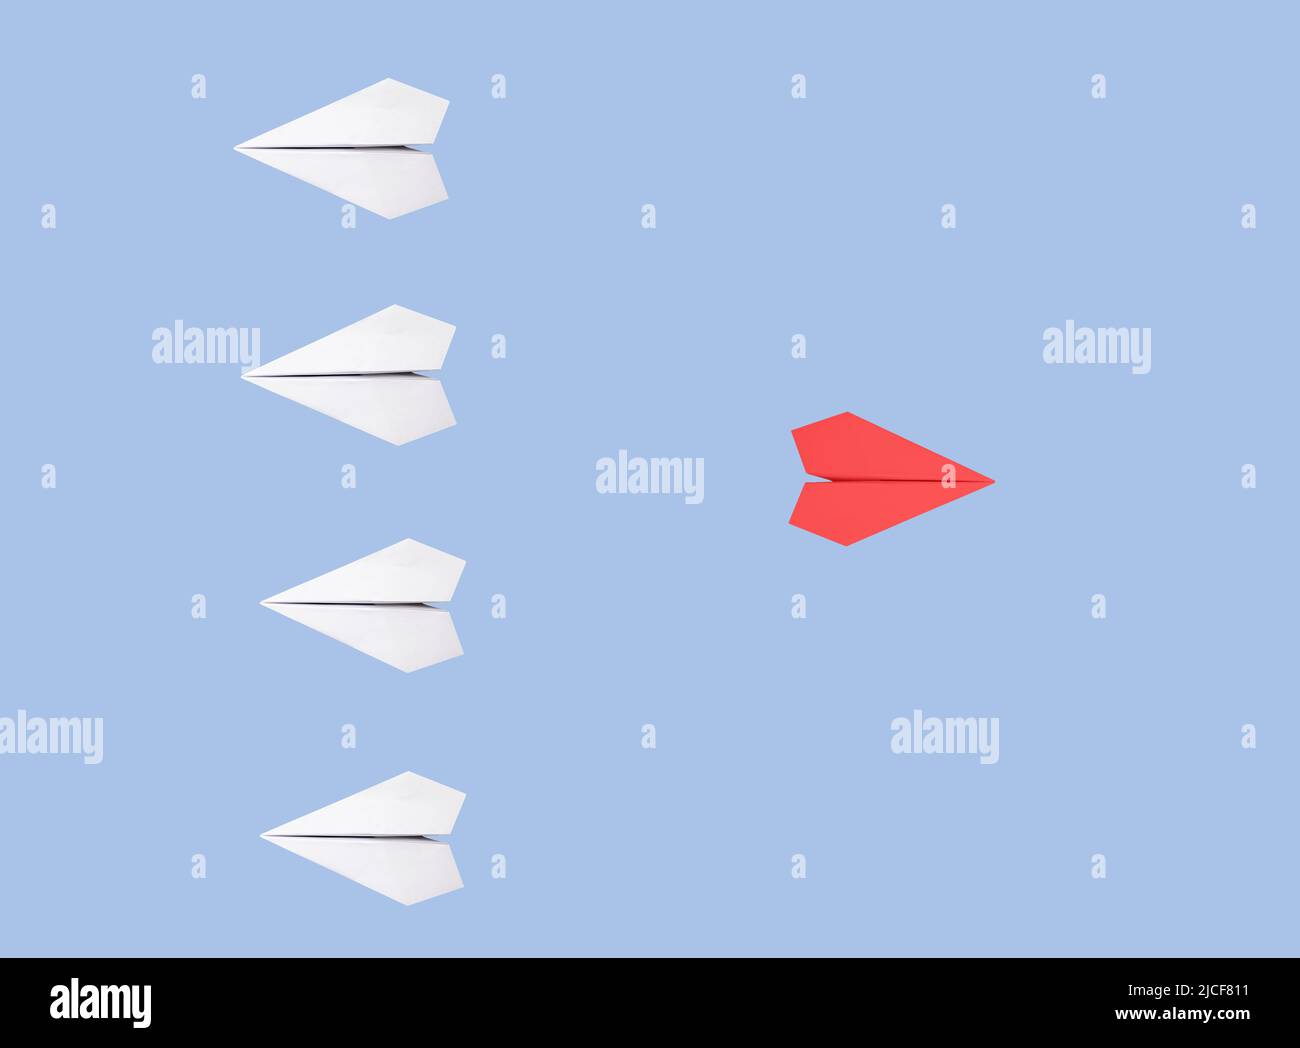 Des avions blancs à base d'origami avec un rouge exceptionnel volant dans la direction opposée sur fond bleu. Nouvelle idée, créativité, individualité, liberté, se démarquer du concept de foule. Photo de haute qualité Banque D'Images